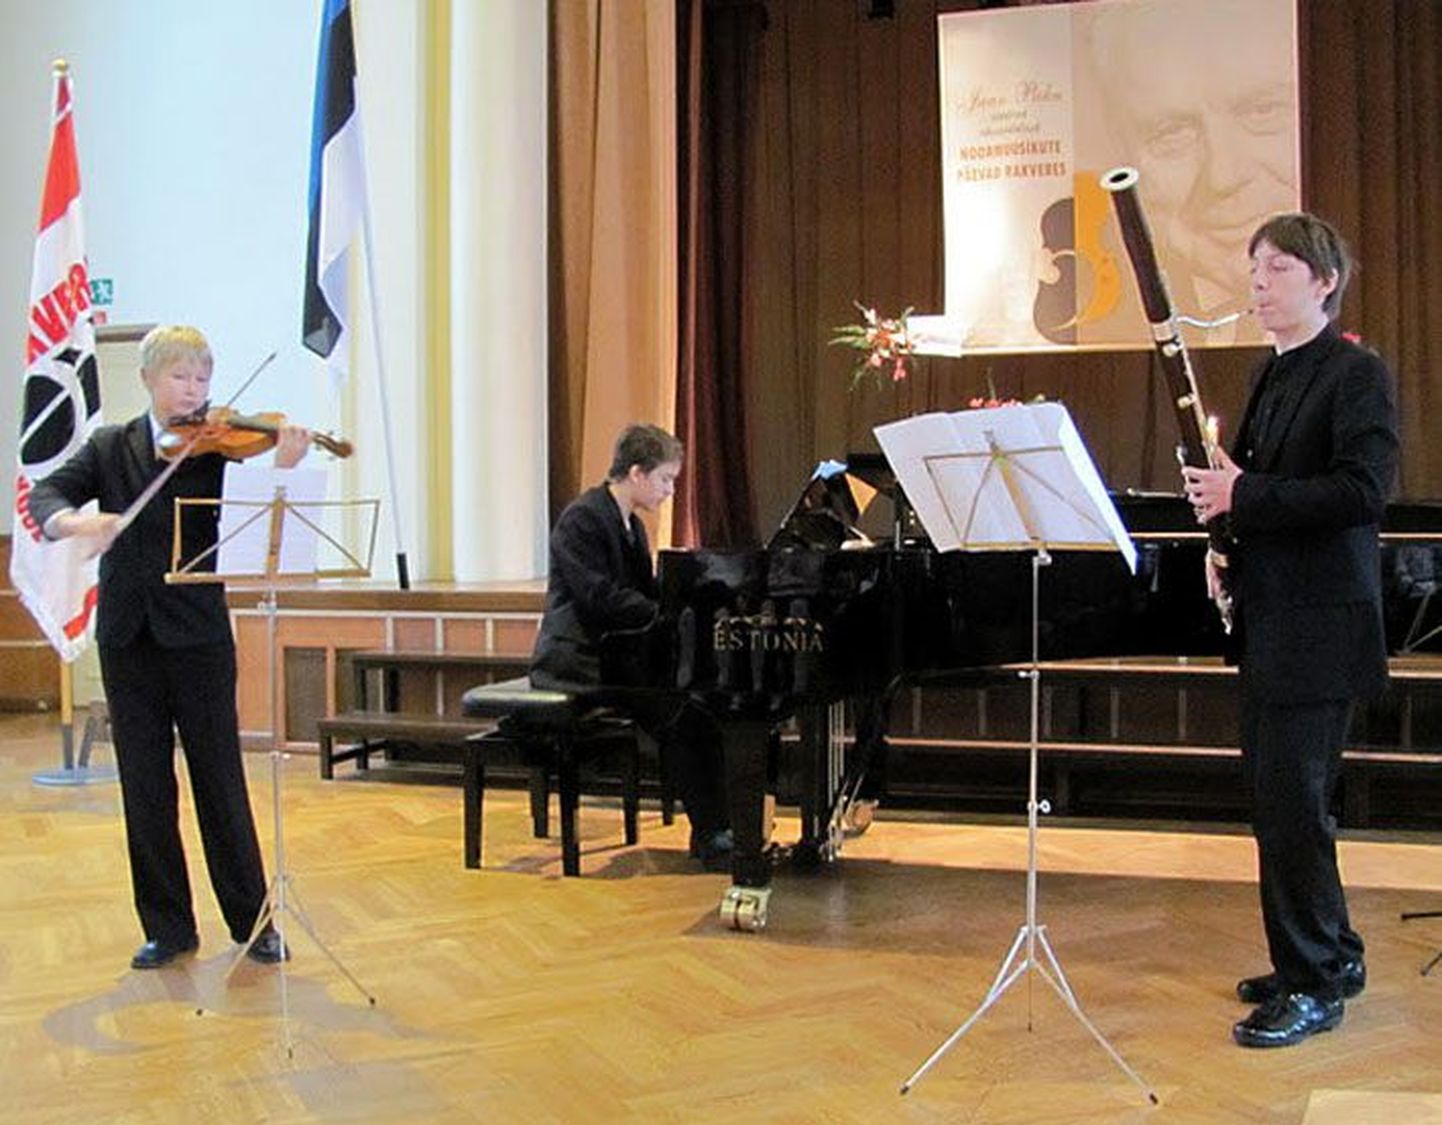 Tallinna muusikakeskkooli ansambel Harija Trio Hans Christian Aavik (viiul), Jakob Peäske (fagott) ja Richard Mägar (klaver) lõpetas meeleolukalt noormuusikute paraadi.